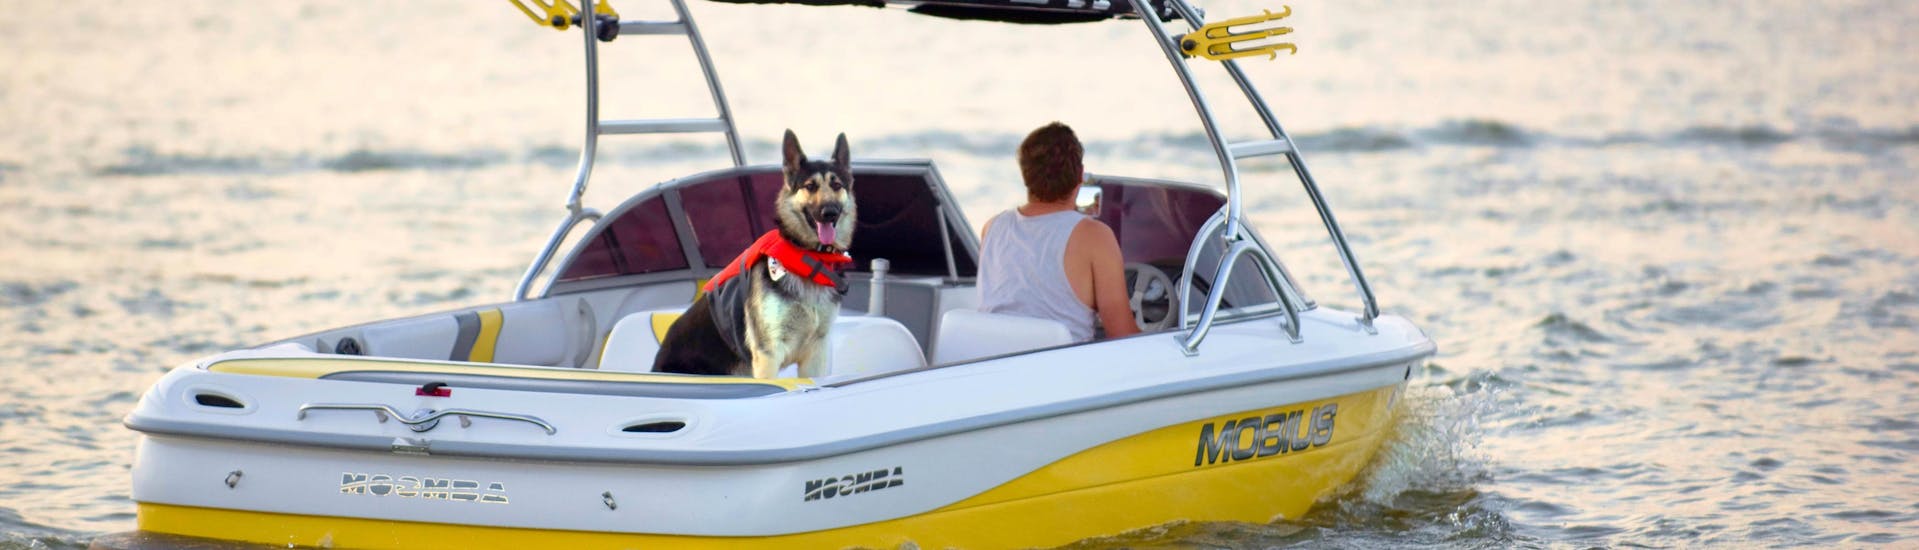 Een persoon vermaakt zich met zijn hond tijdens een bootverhuuractiviteit met honden en huisdieren.